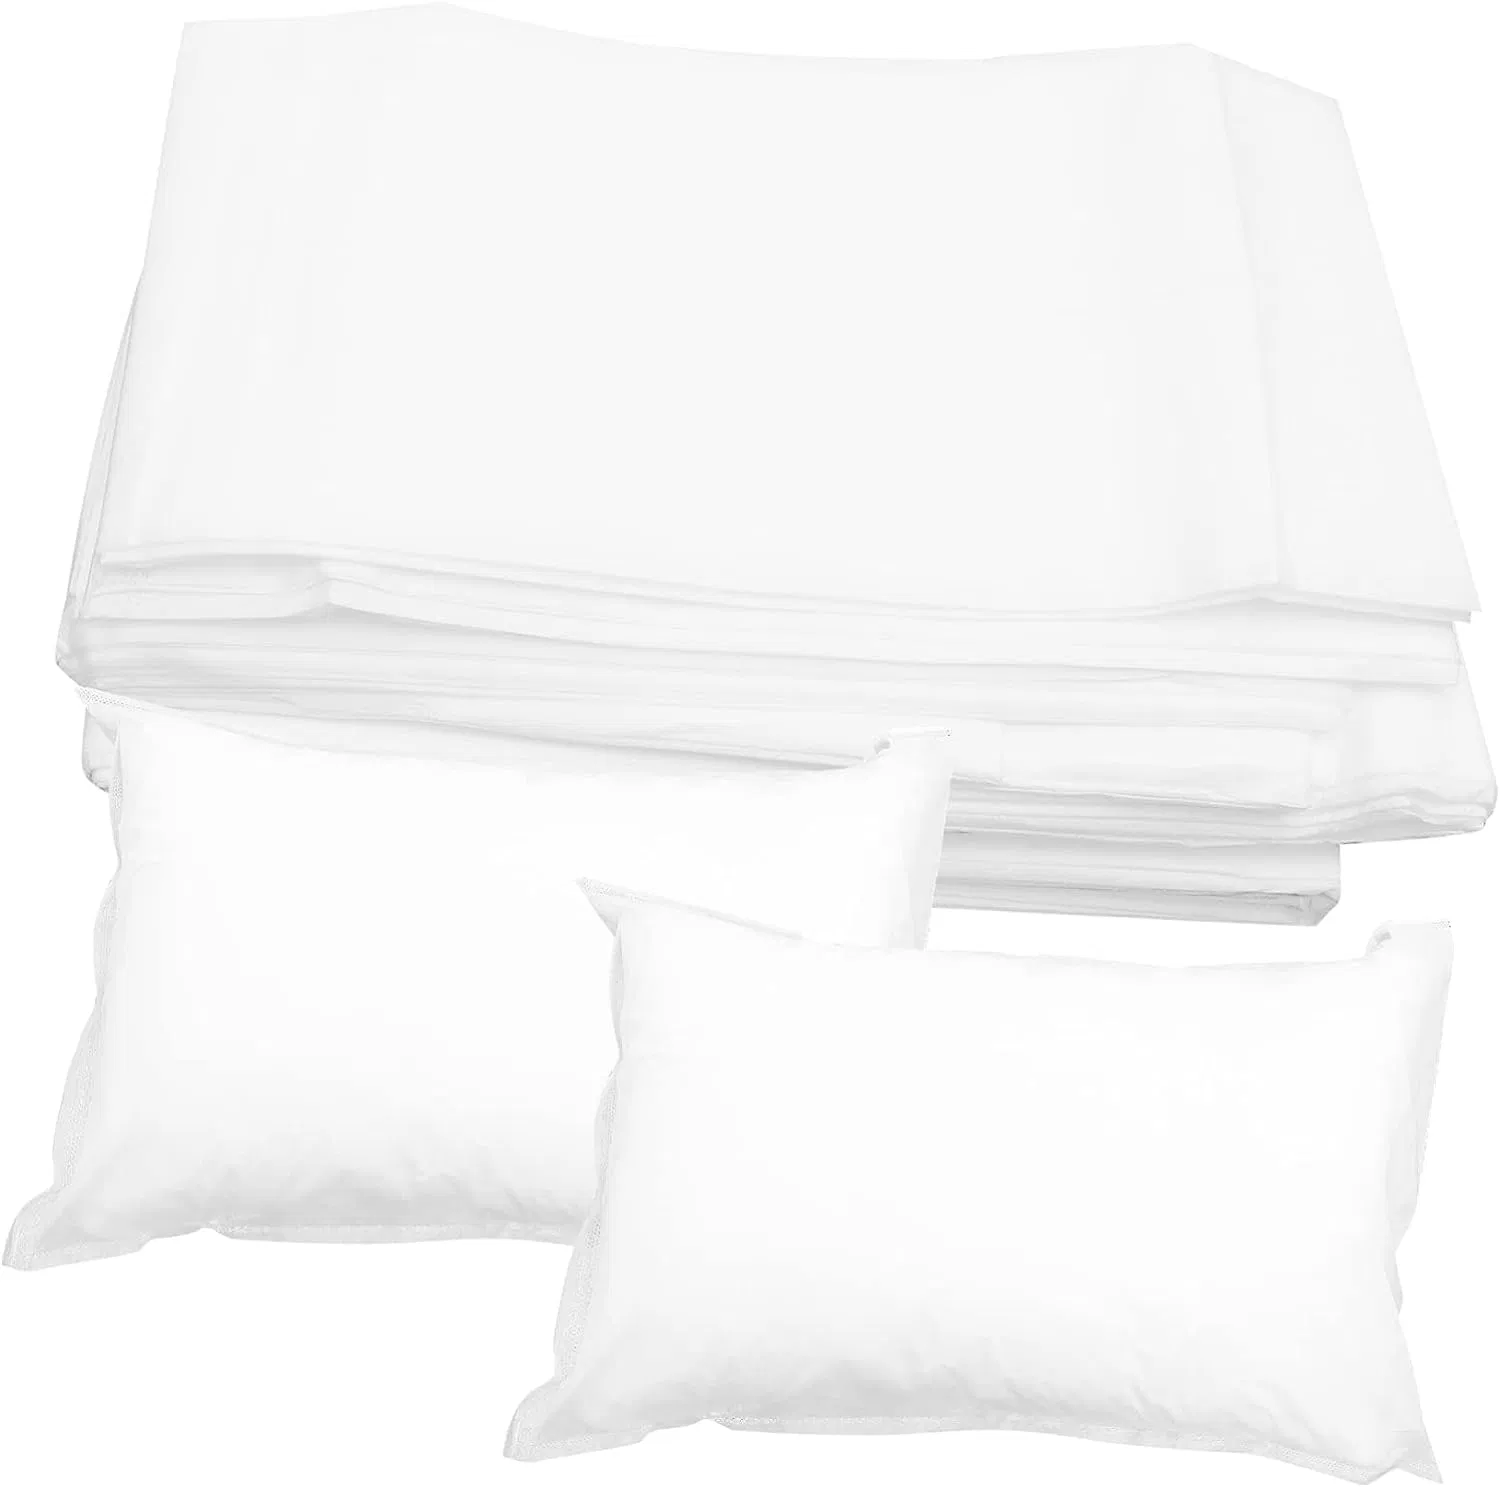 Ropa de cama sábanas desechables - Tejido Non-Woven suave y duradera para el viaje, hospital, el aire y el hogar - Producto hipoalergénico y conveniente